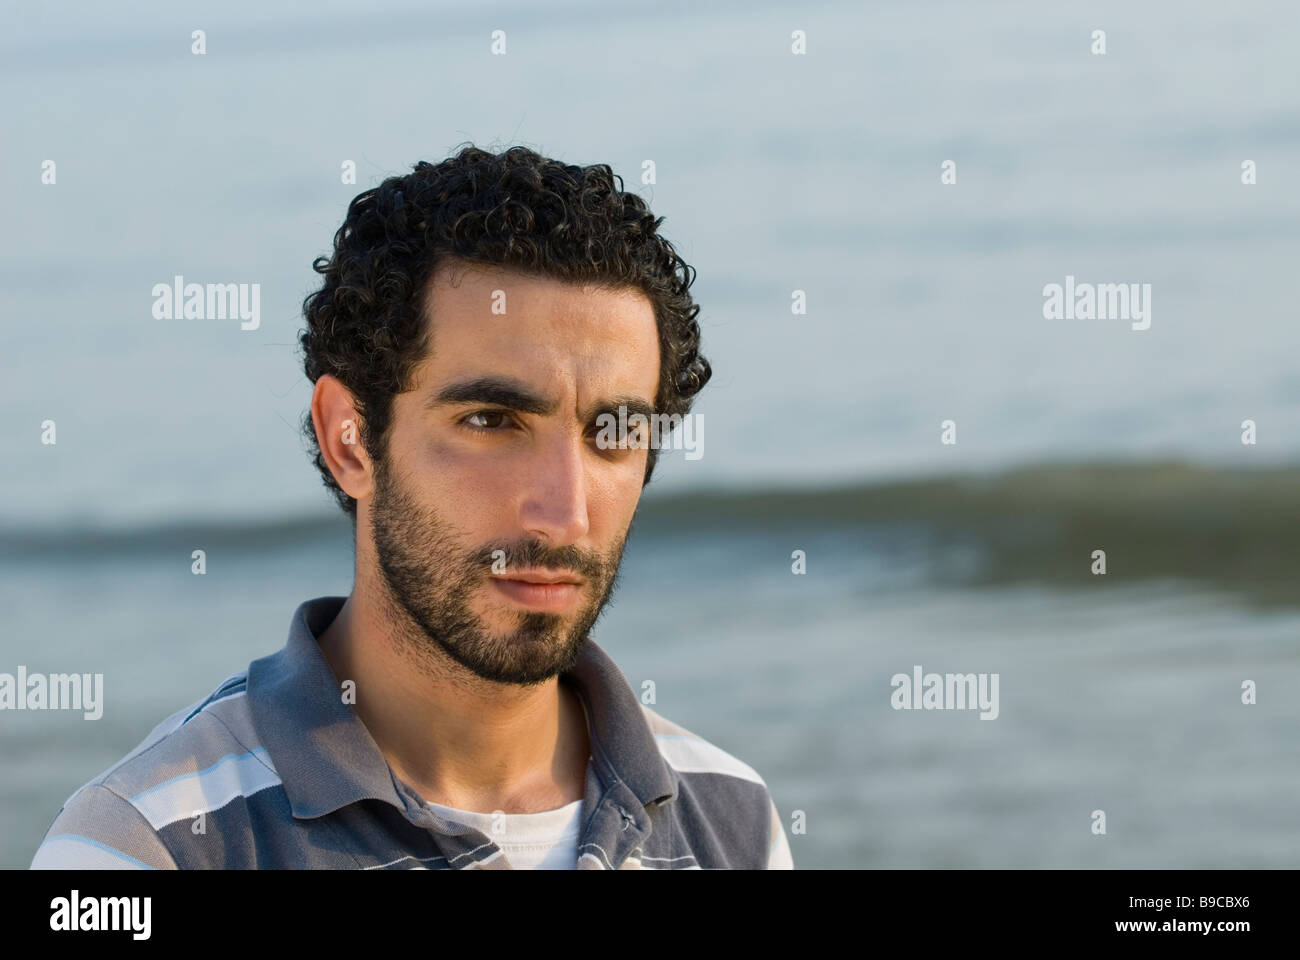 Portrait d'un jeune homme du Moyen-Orient par la mer Beyrouth Liban Moyen-Orient Asie Banque D'Images